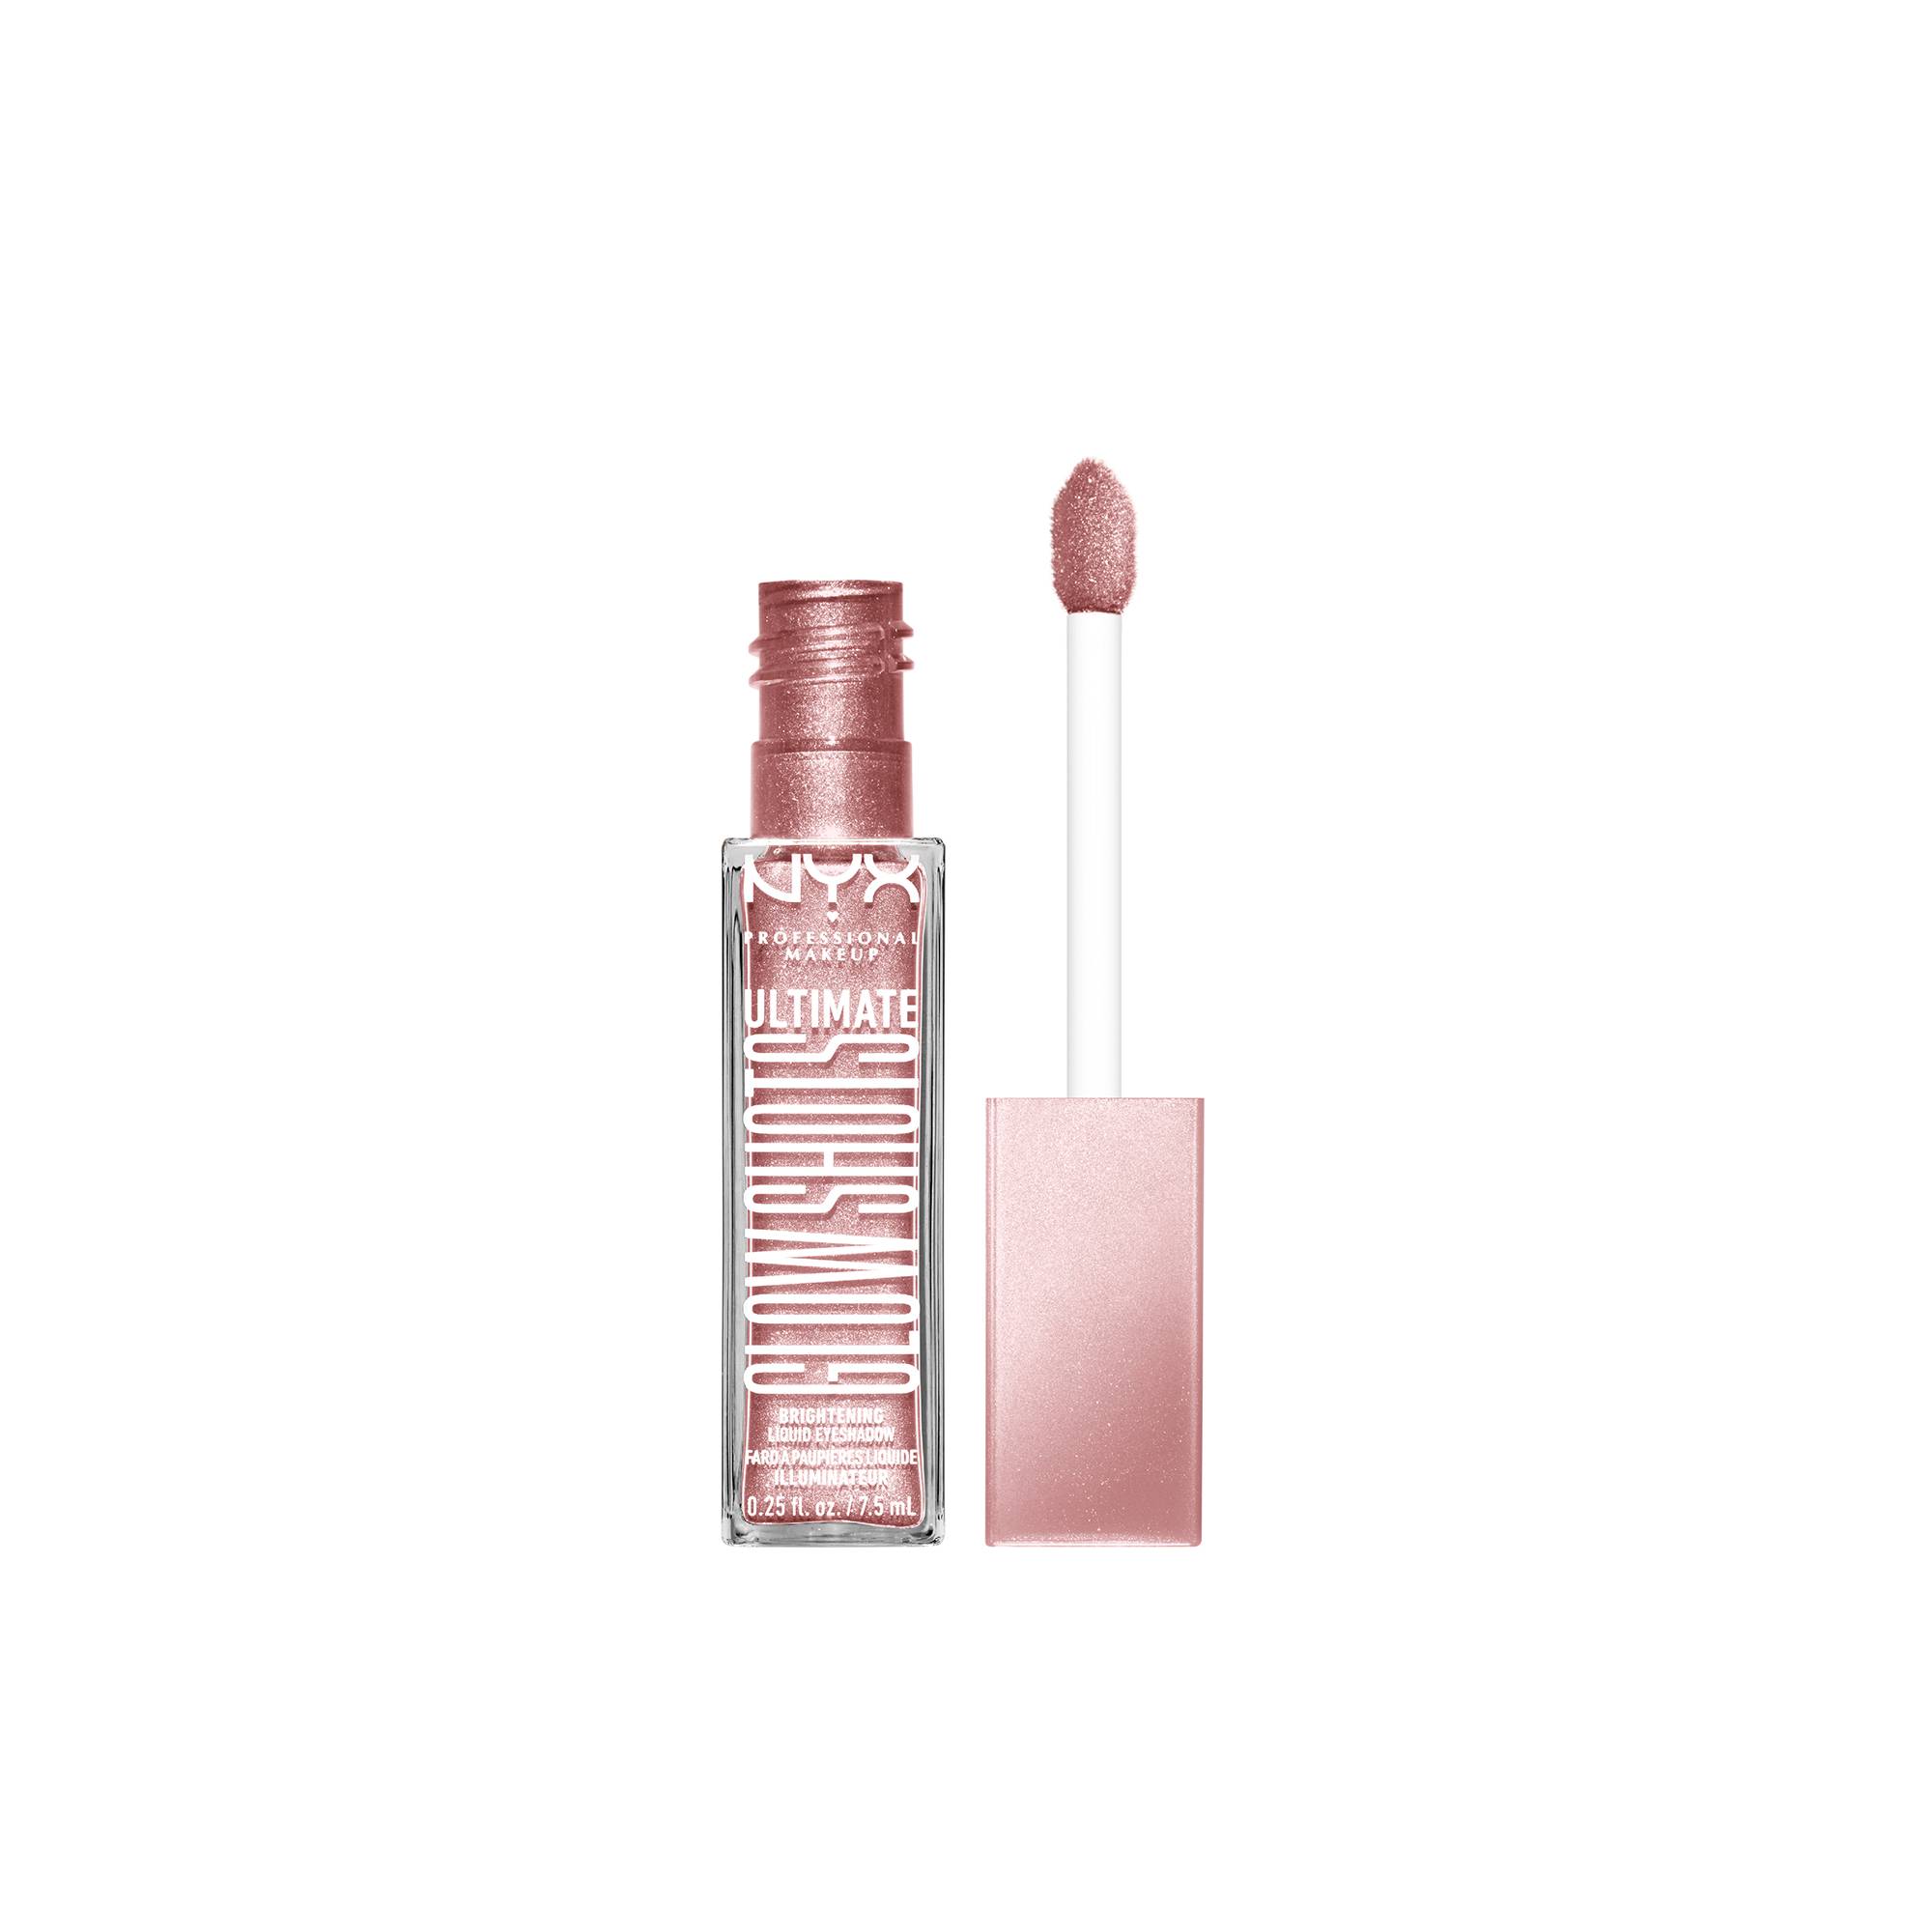 Fard à paupières Ultimate glow shots - Grapefruit glow de la marque NYX Professional Makeup Contenance 26g - 3